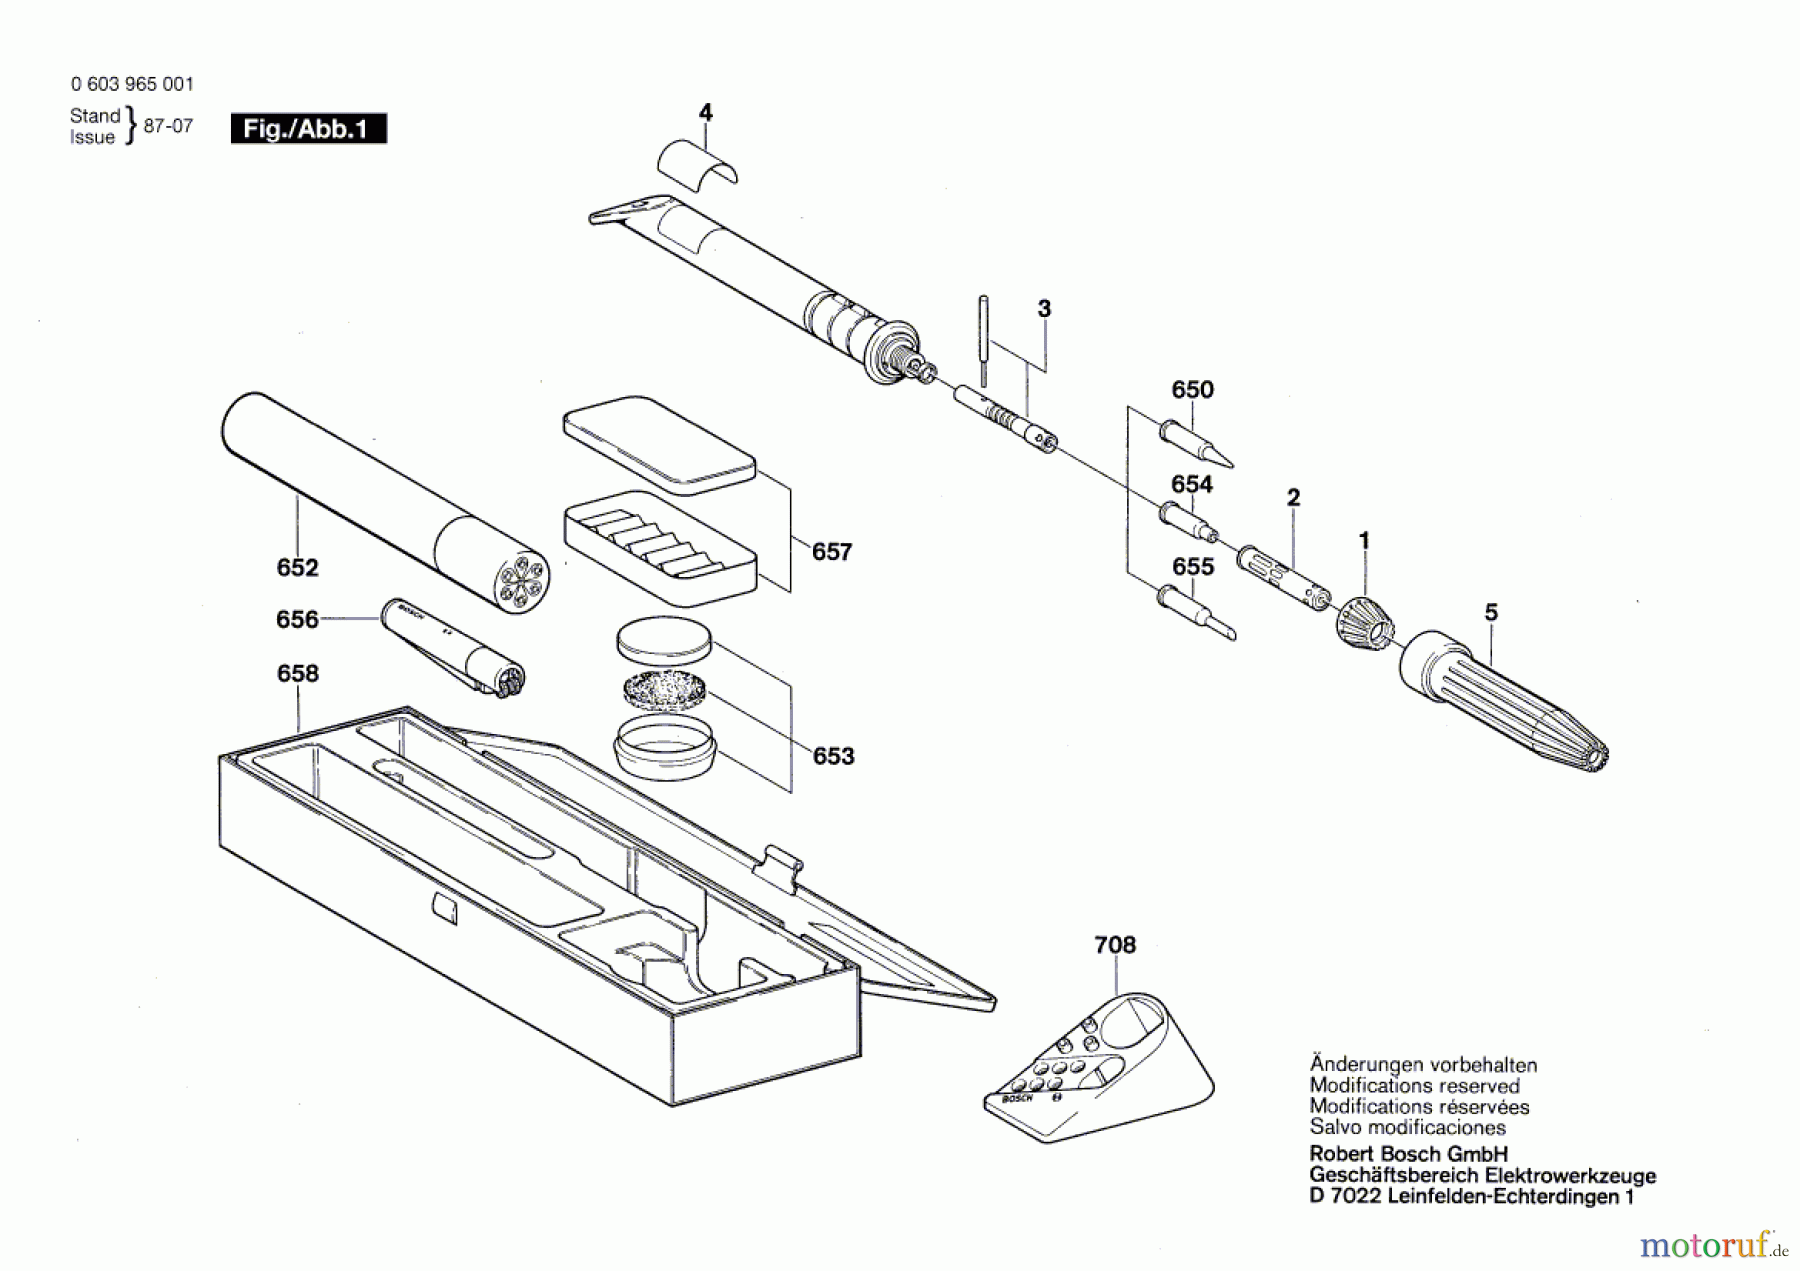  Bosch Werkzeug Gaslöter MGL 1300 Seite 1